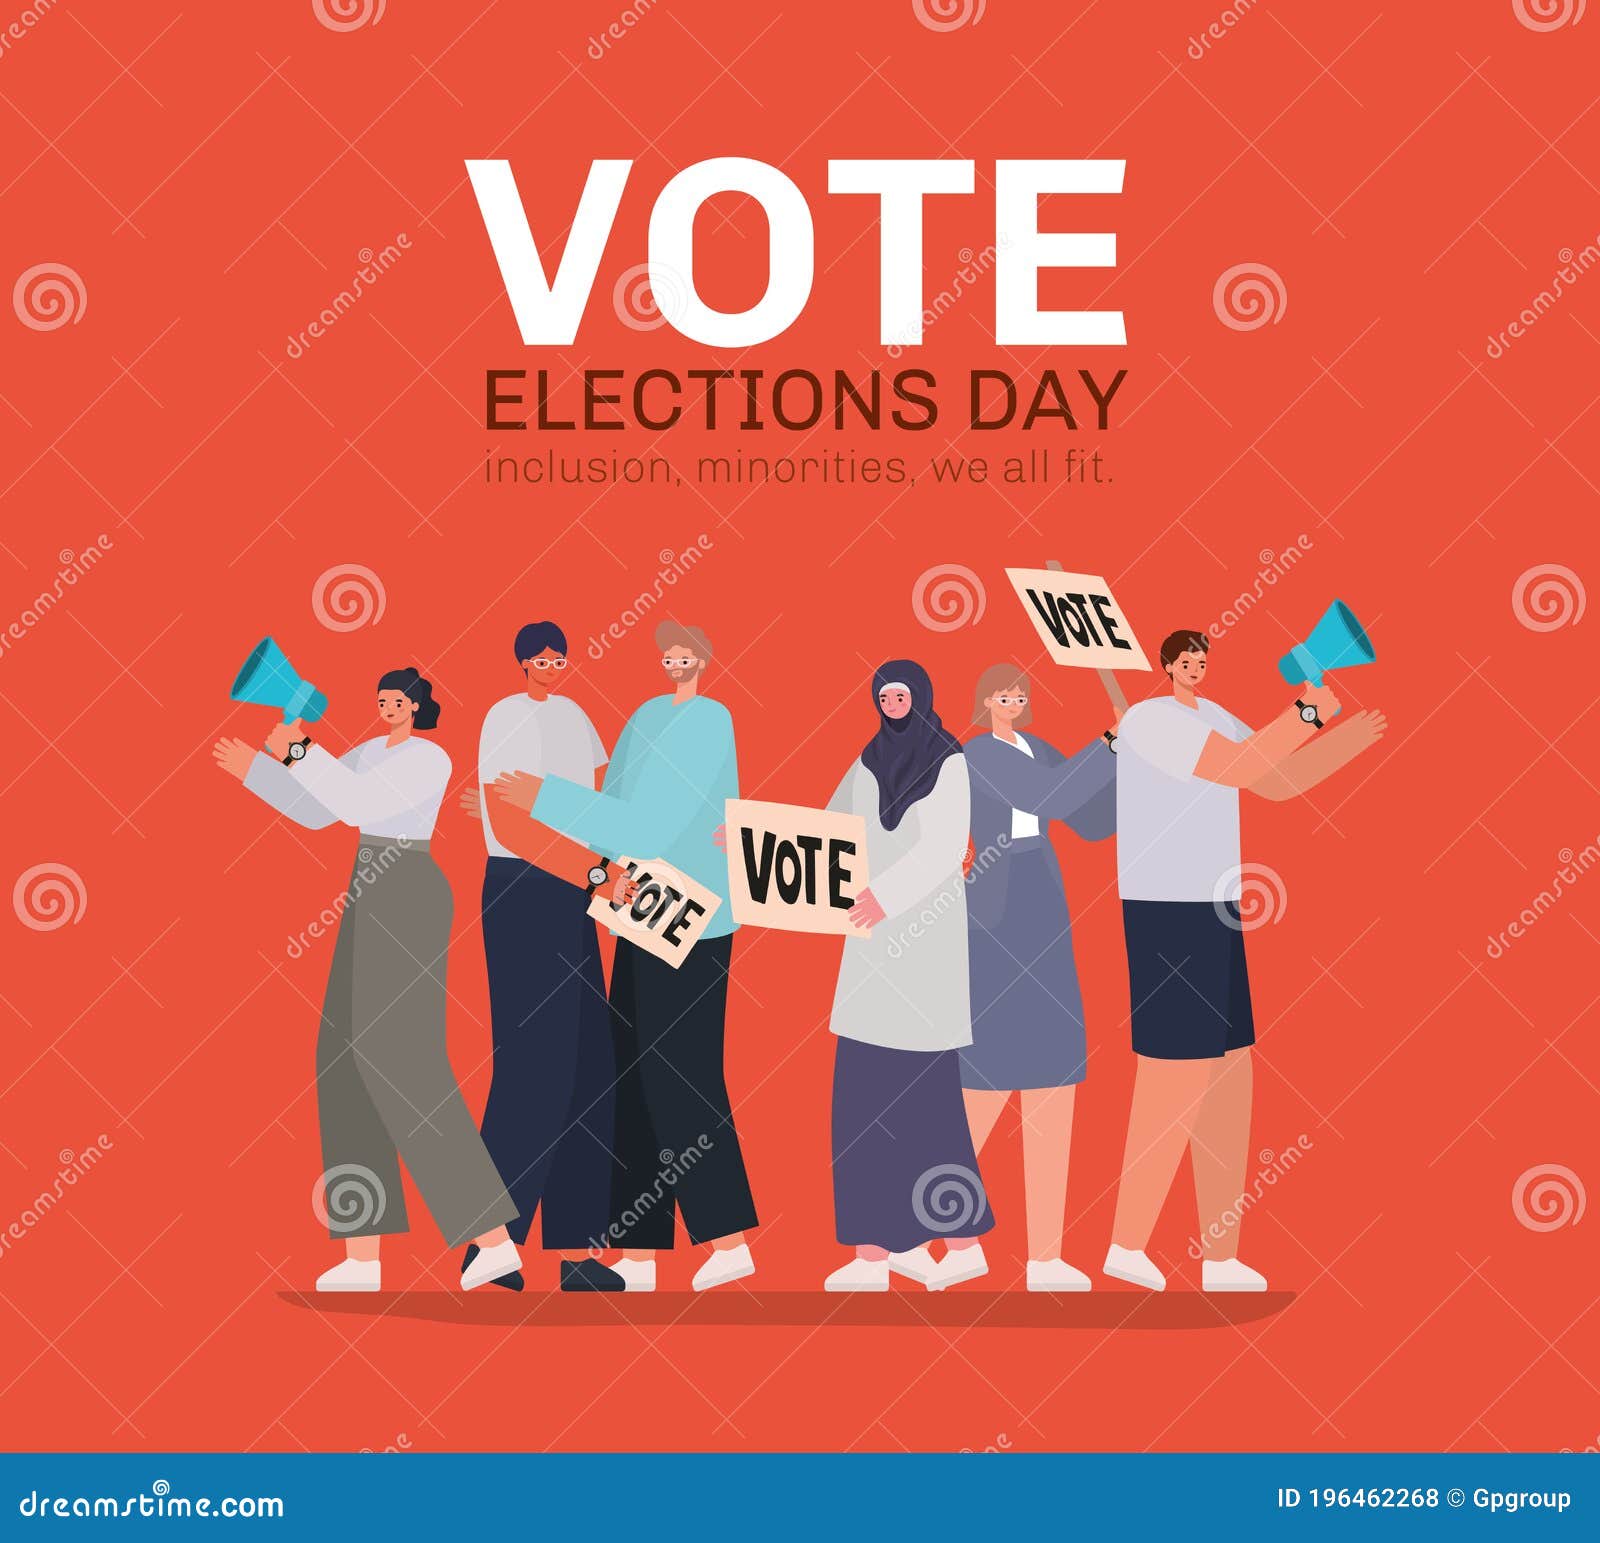 Hãy xem một hình ảnh vô cùng đặc biệt với biểu tượng phụ nữ và nam giới đang bỏ phiếu và có loa để truyền tải sức mạnh người dân. Nền đỏ lửa nóng sẽ khiến bạn tự hào về quyền dân chủ. 